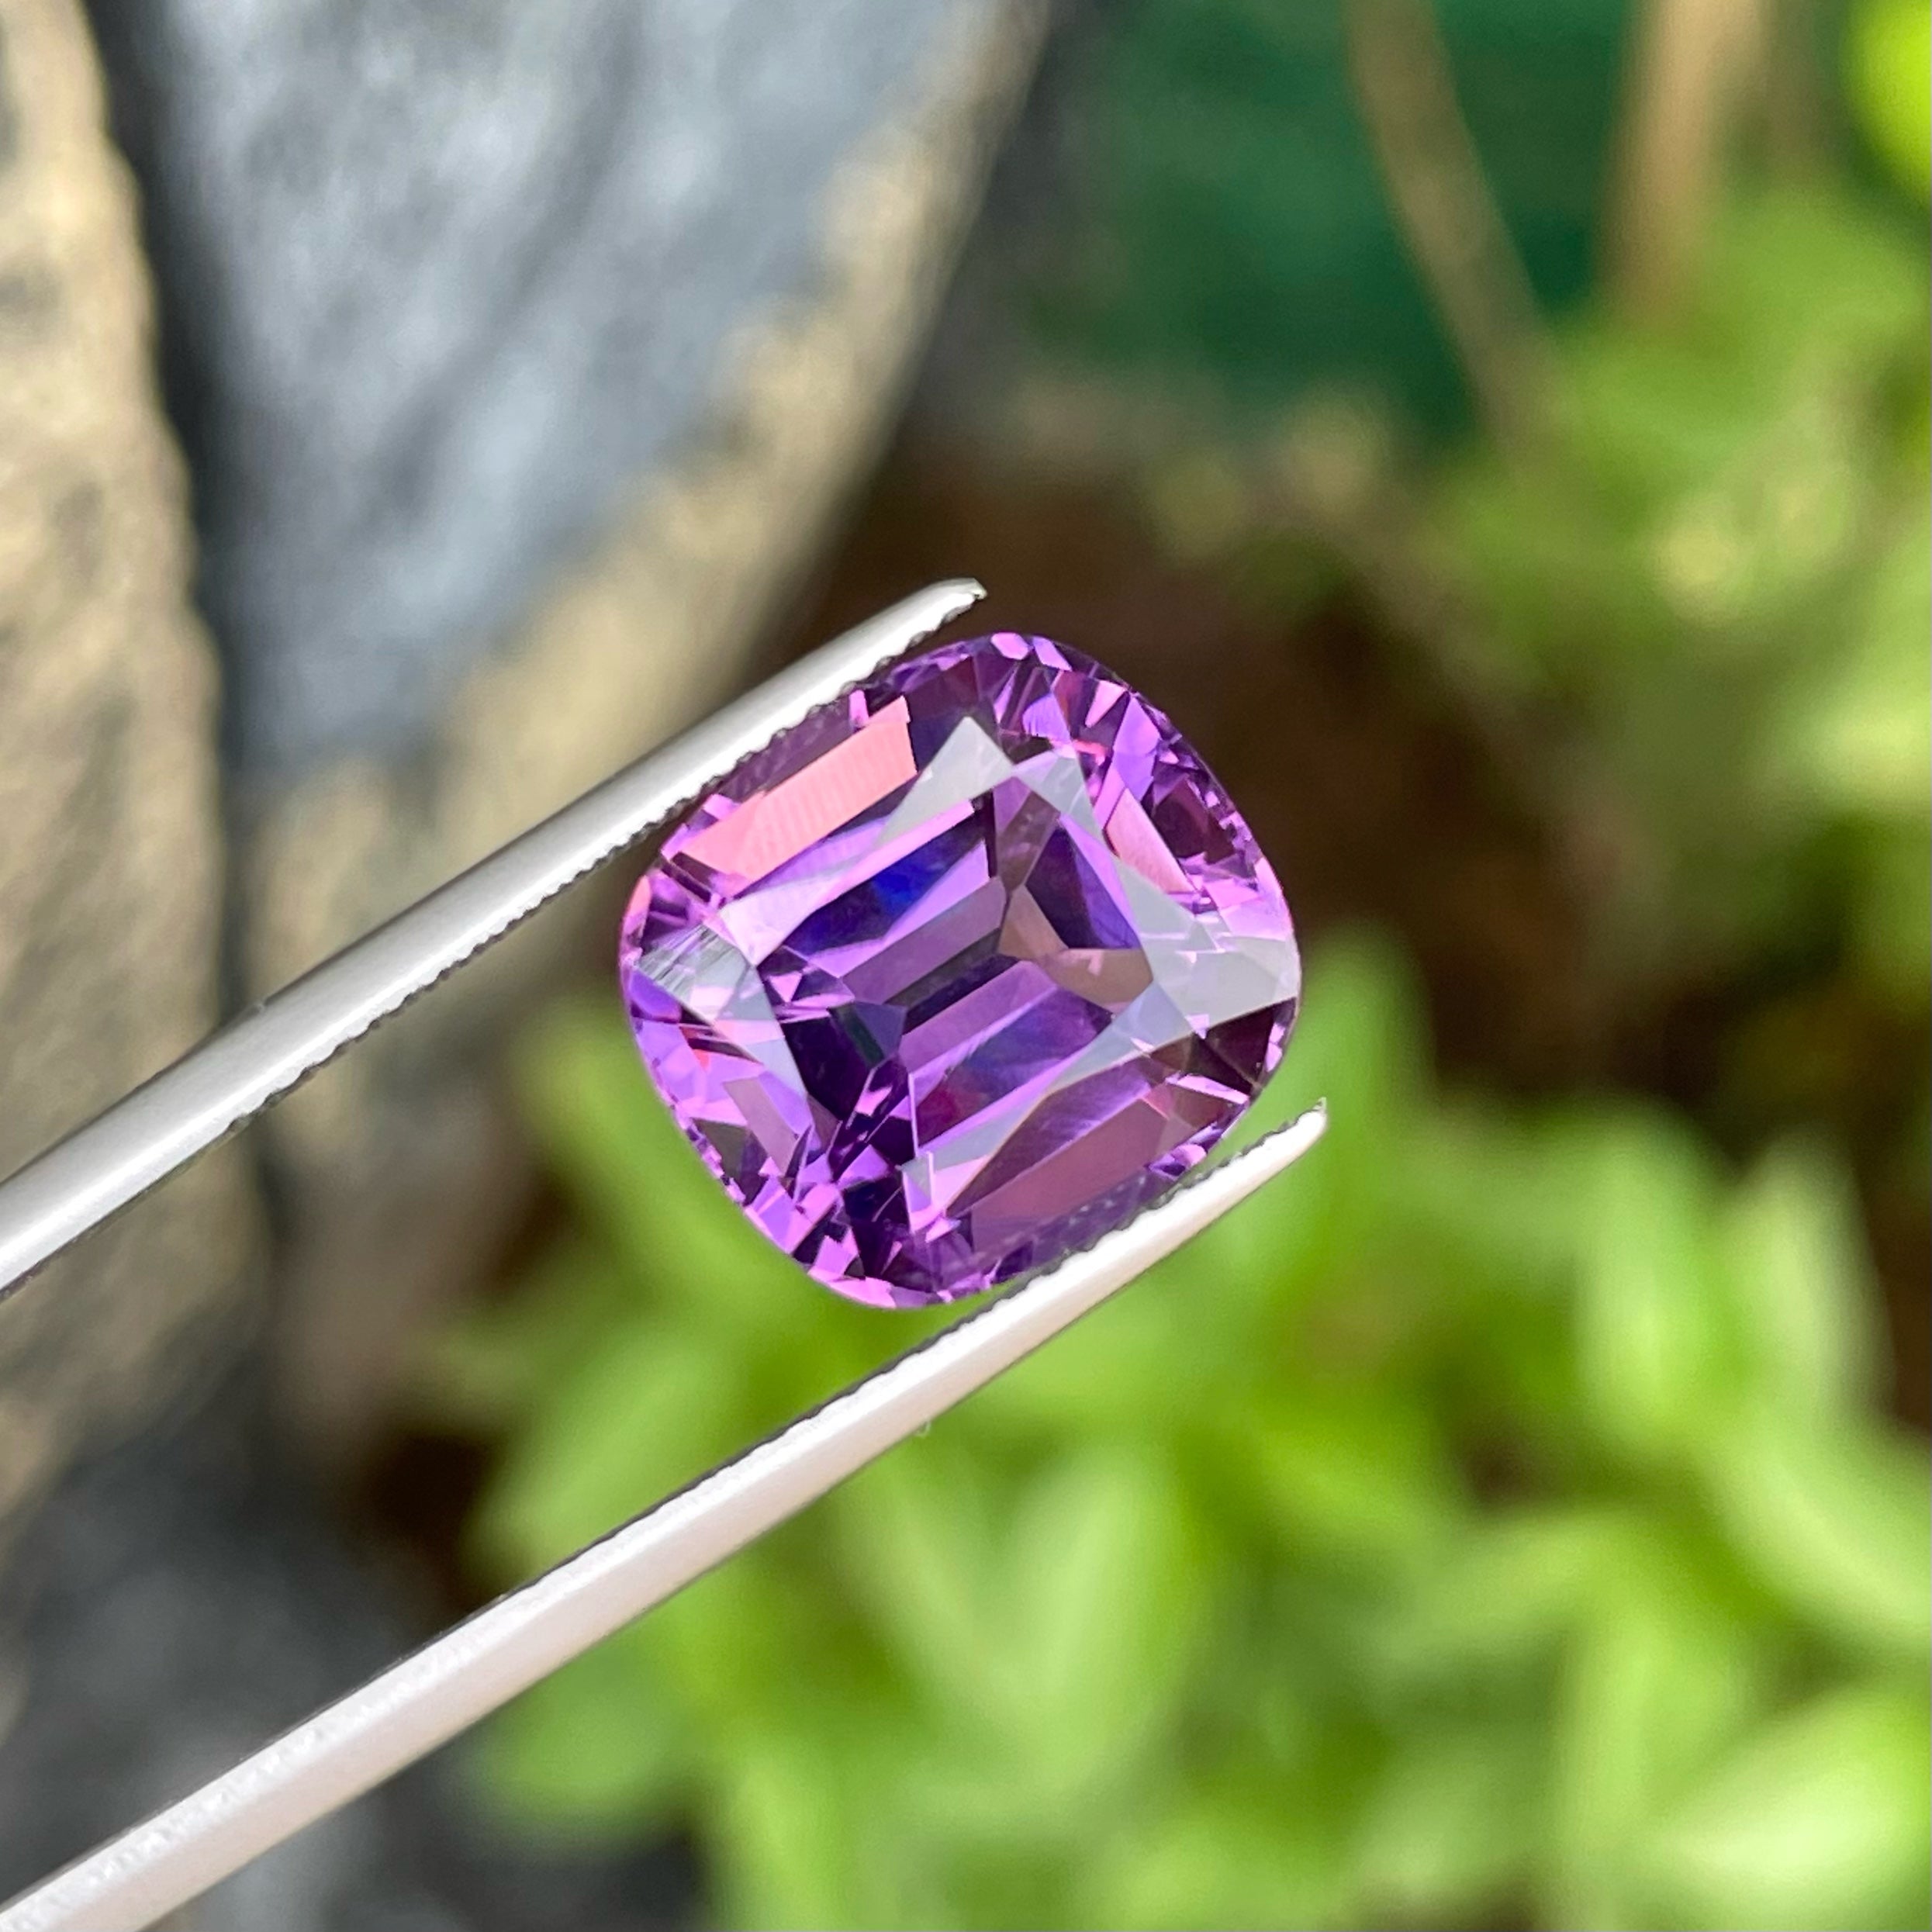 Cushion-Cut Soft Purple Amethyst Gemstone